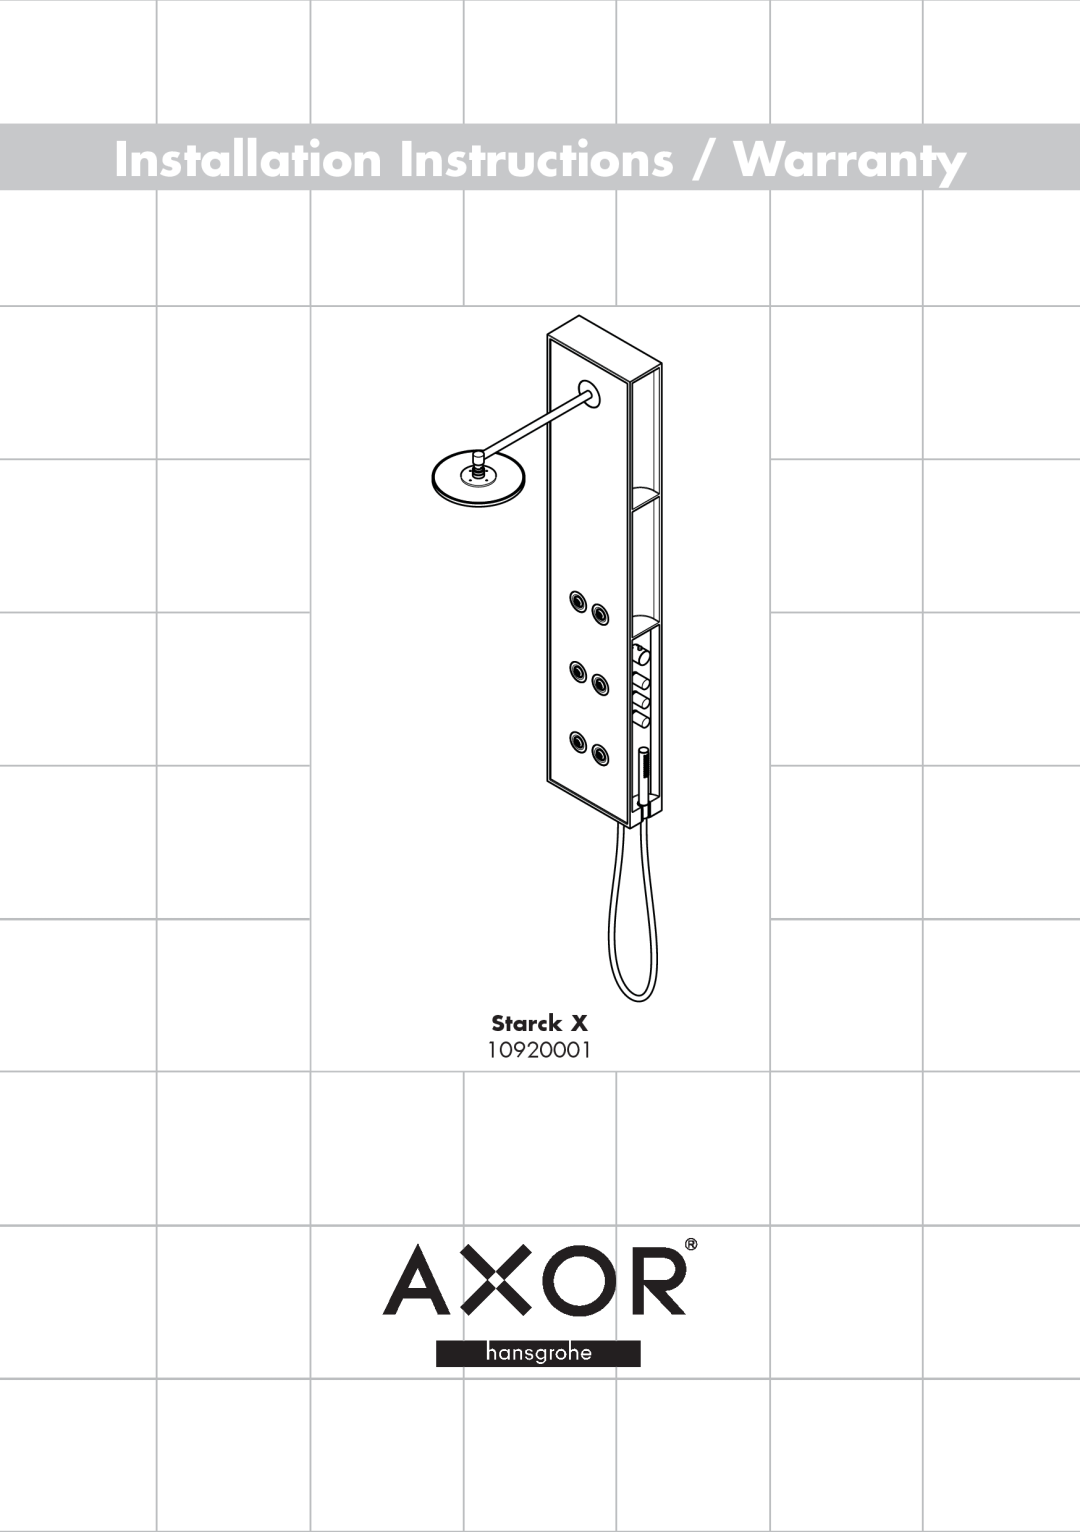 Axor 10920001 installation instructions Installation Instructions / Warranty, Starck 